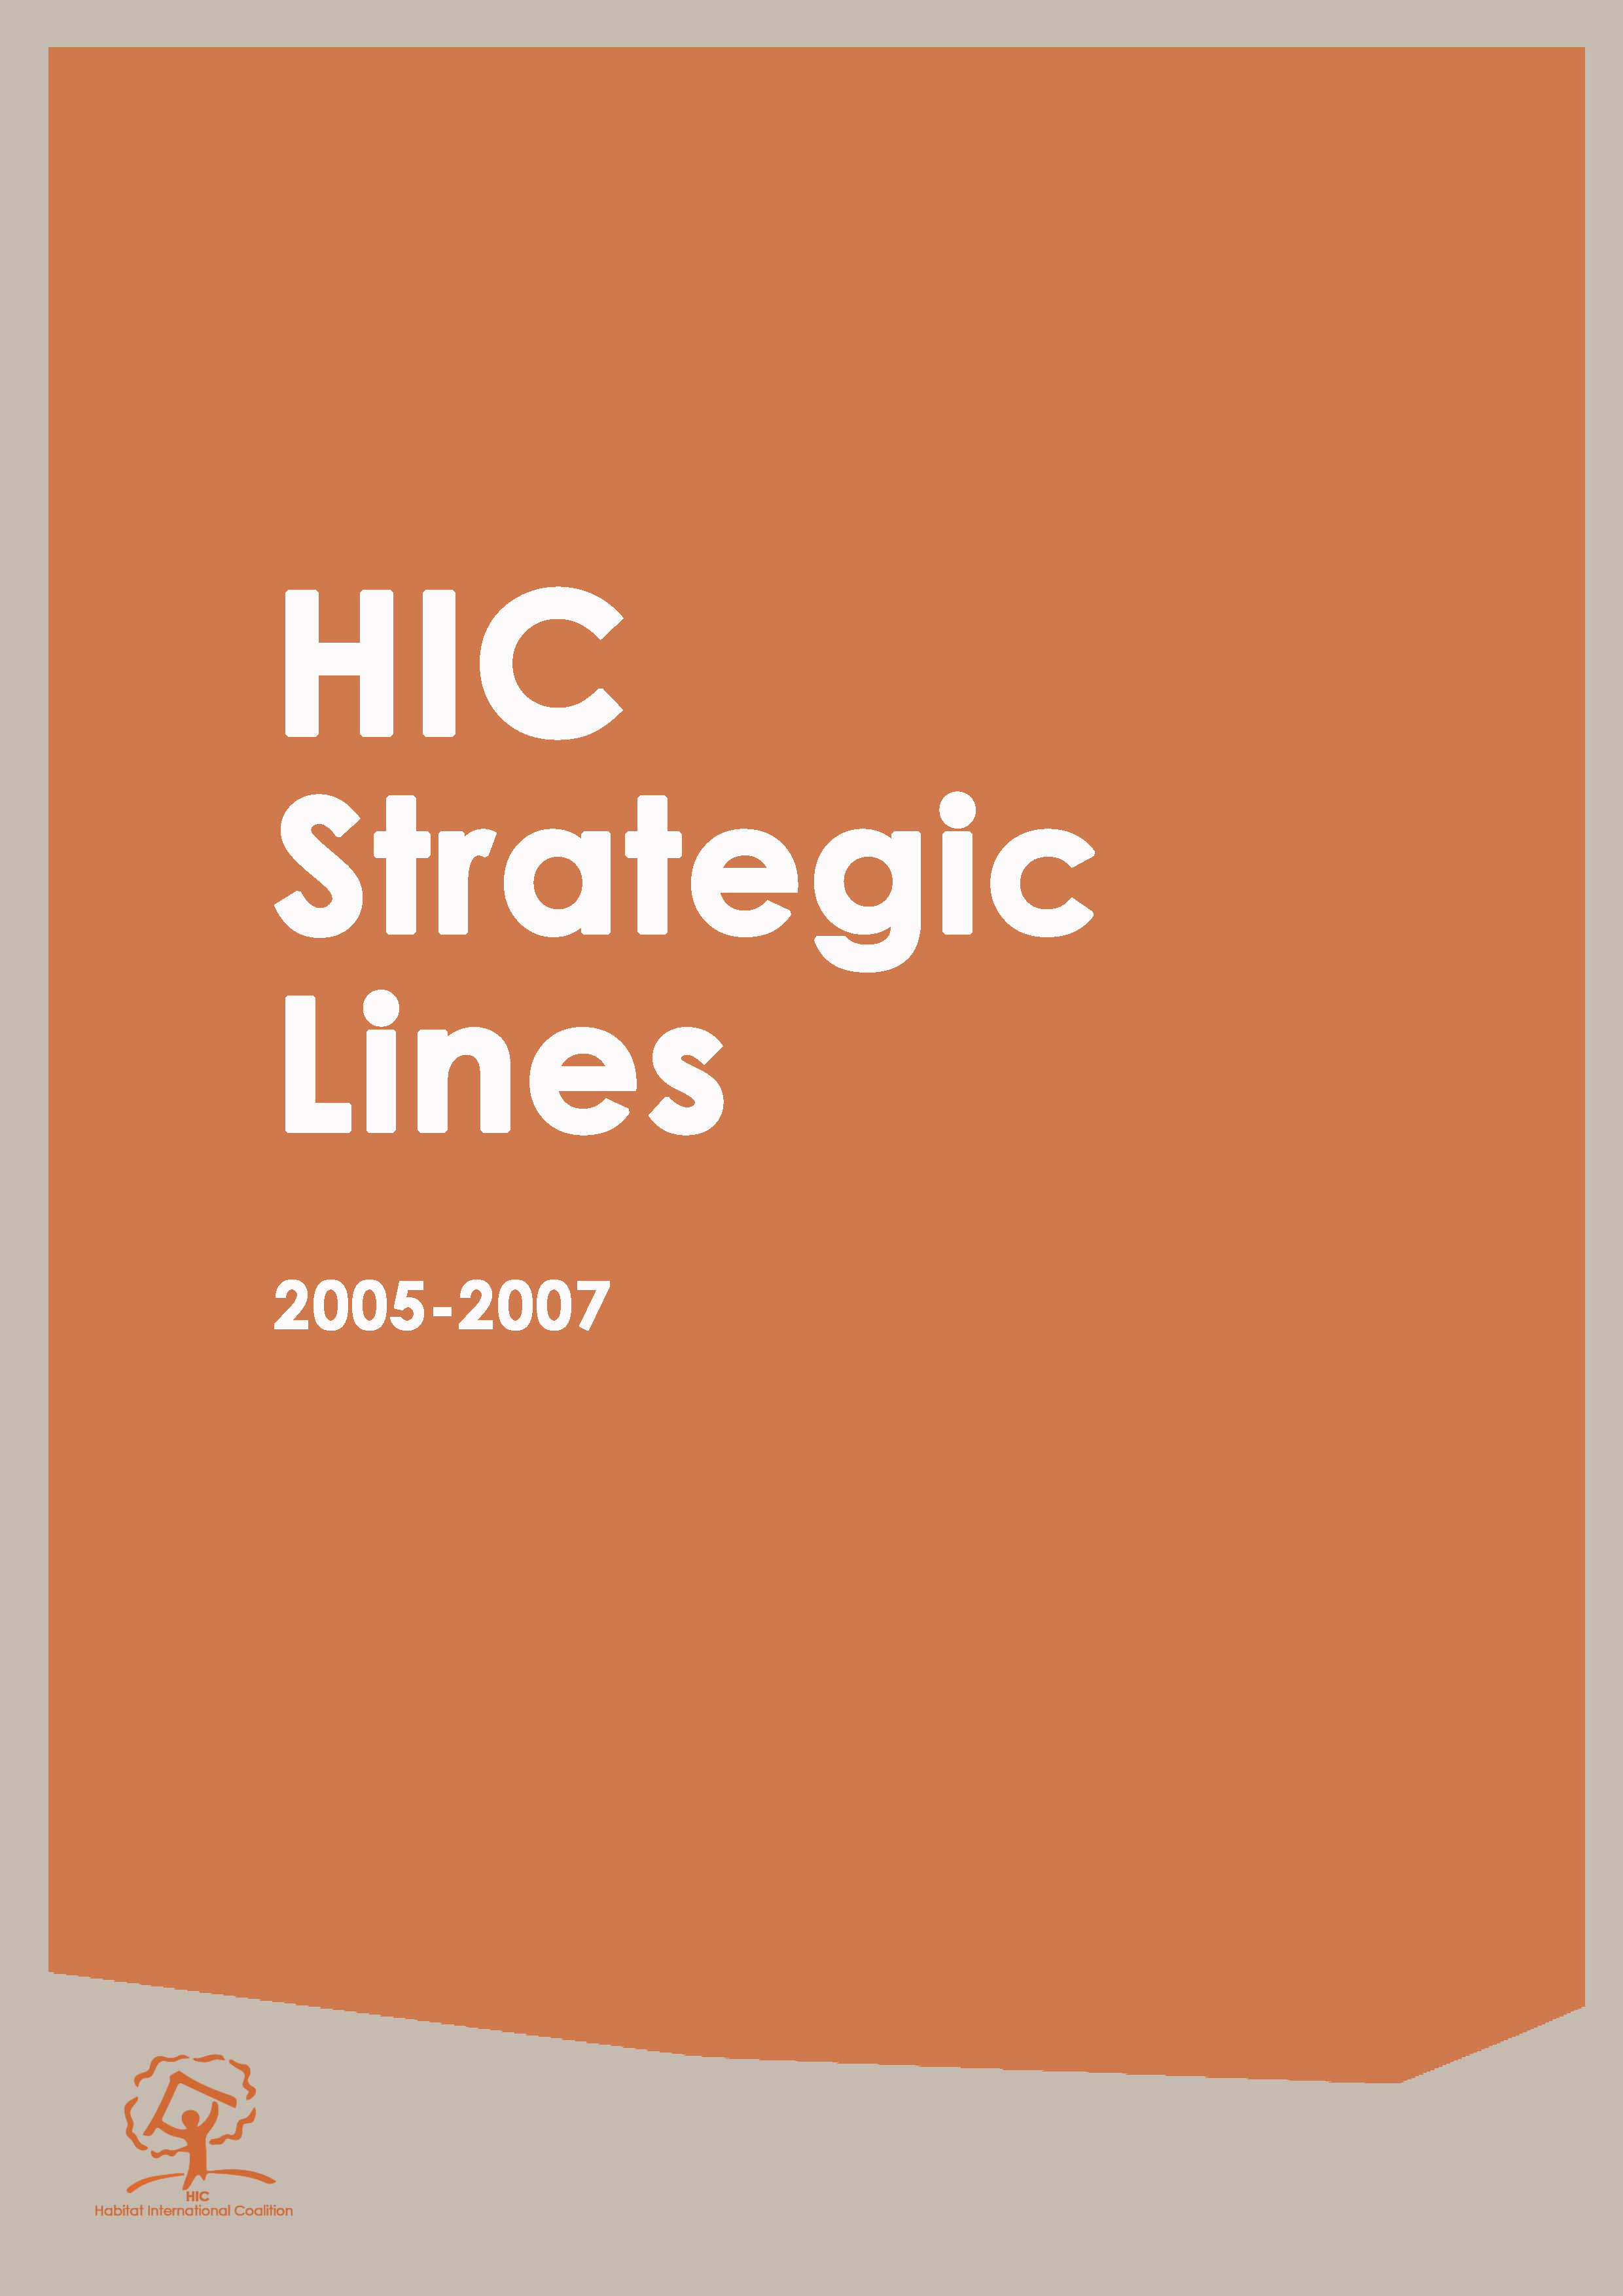 HIC Strategic Lines 2005-2007